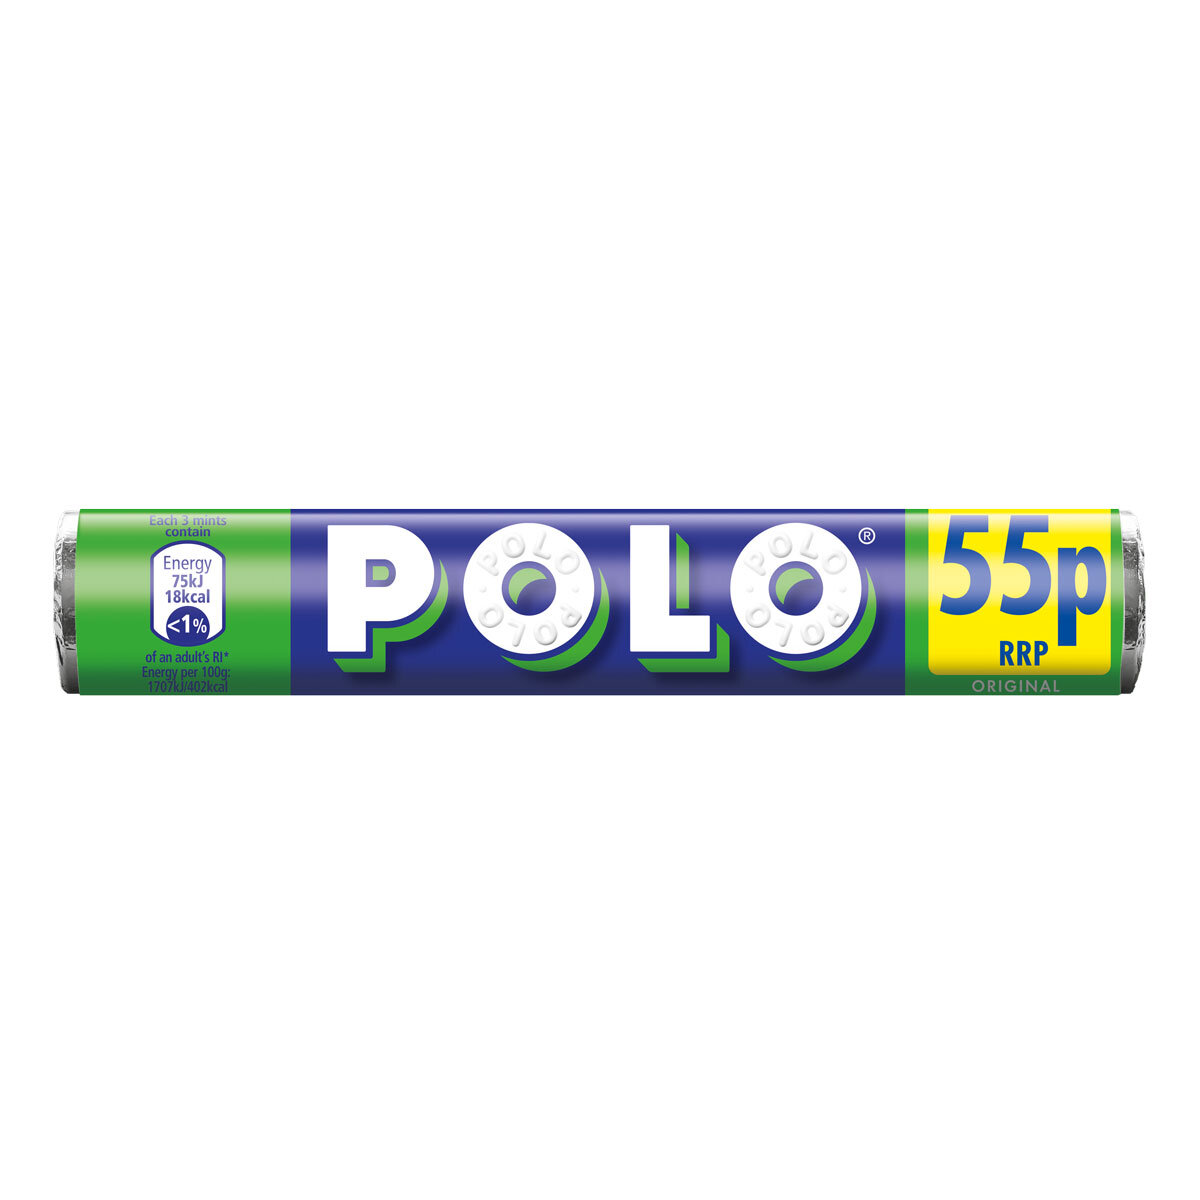 Nestle Polo Original Mints PMP, 34g